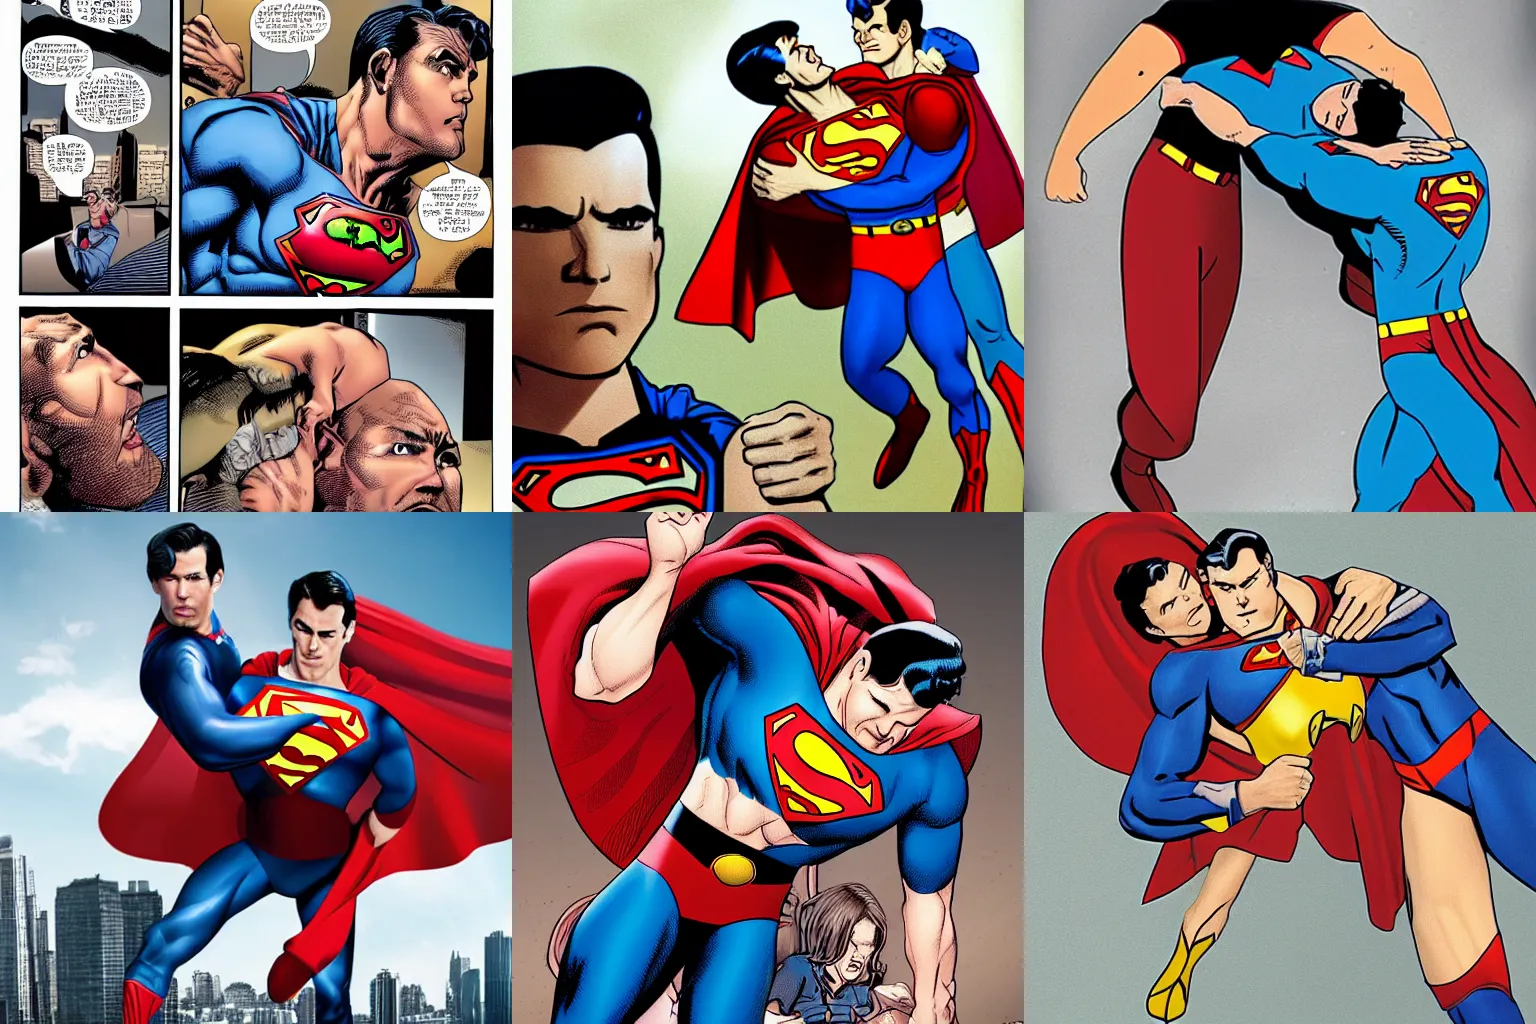 Prompt: Homelander grabbing Superman by the neck